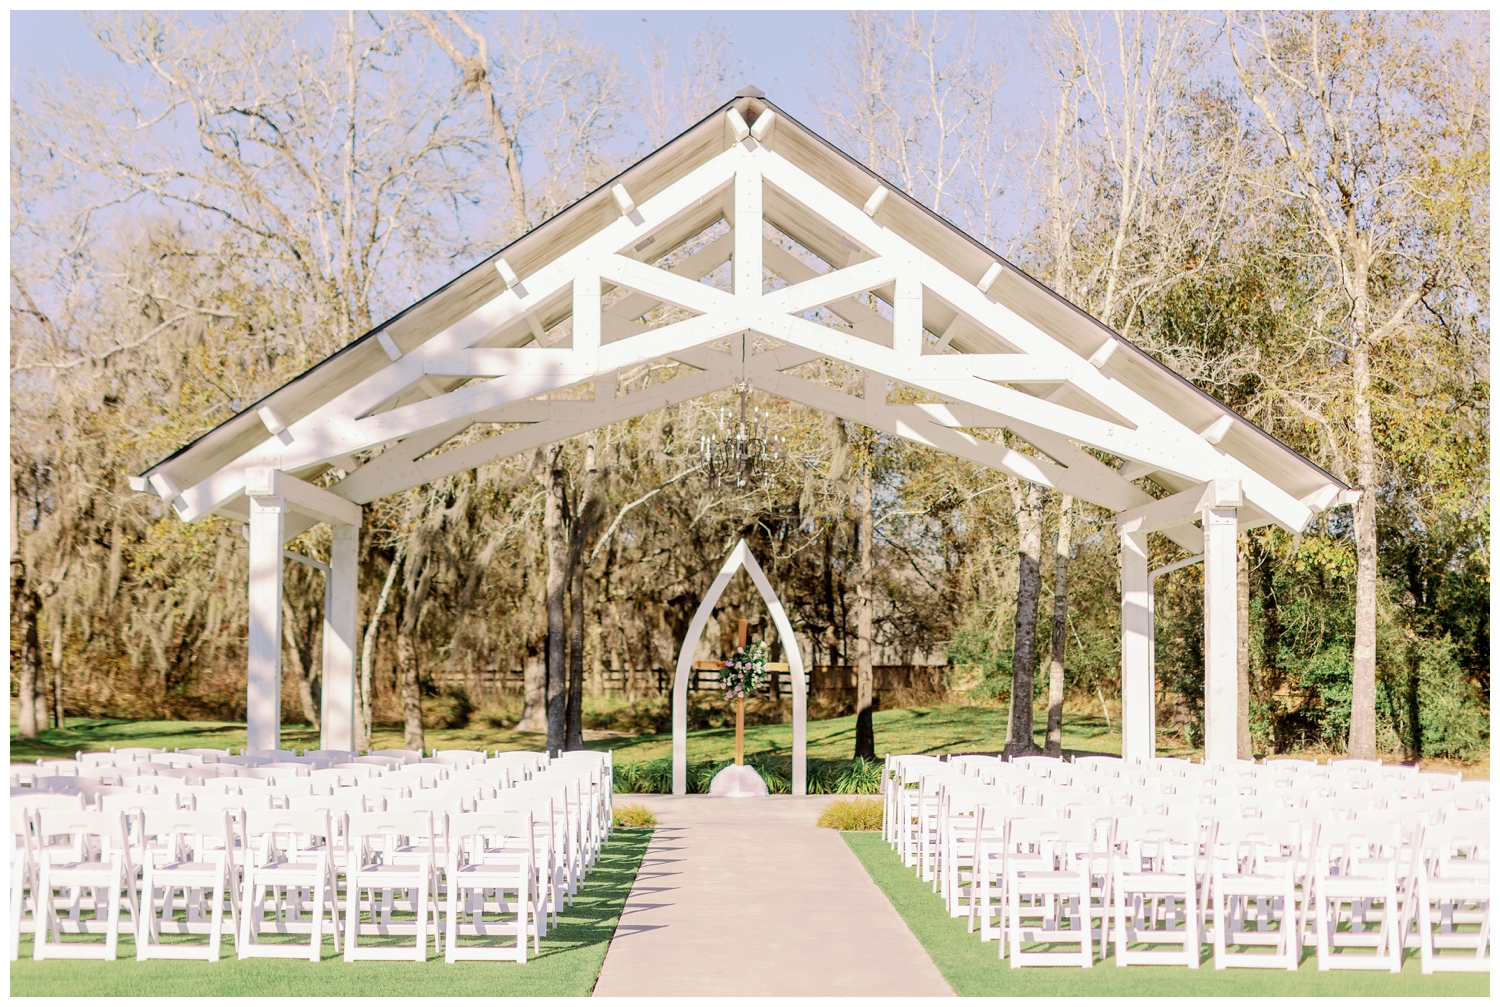 The Springs Wallisville Wedding venue outdoor ceremony space